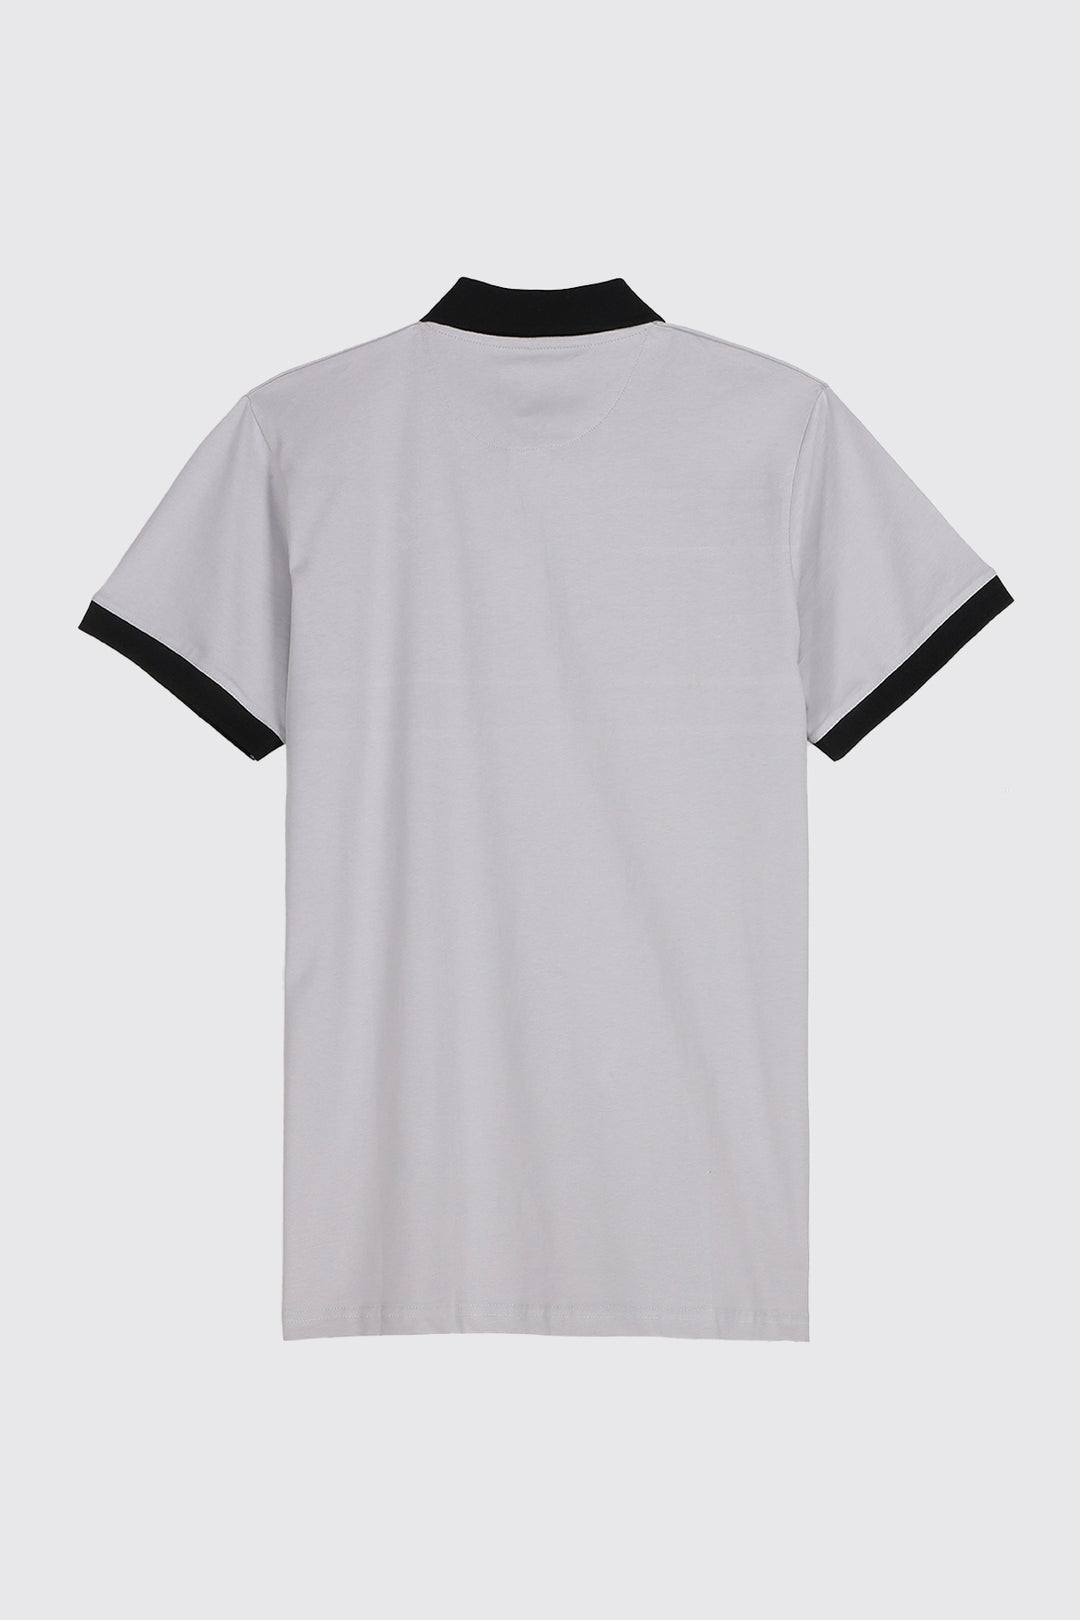 White & Indigo Panelled Polo Shirt (Plus Size) - A23 - MP0181P